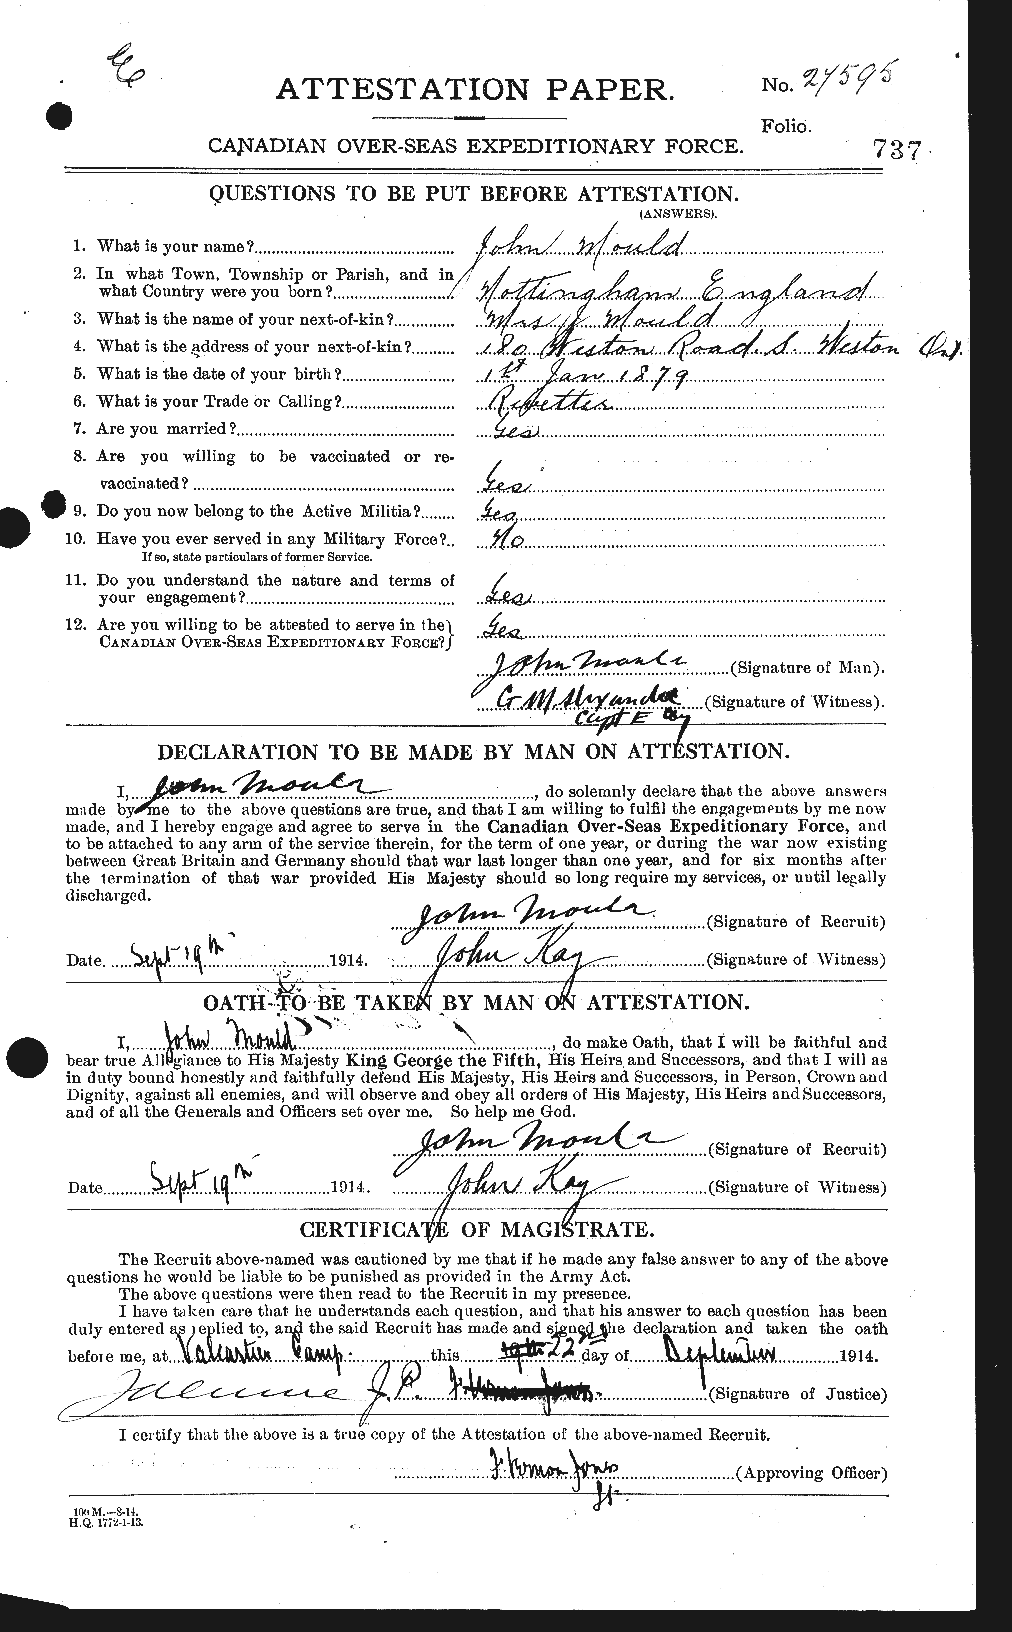 Dossiers du Personnel de la Première Guerre mondiale - CEC 508342a